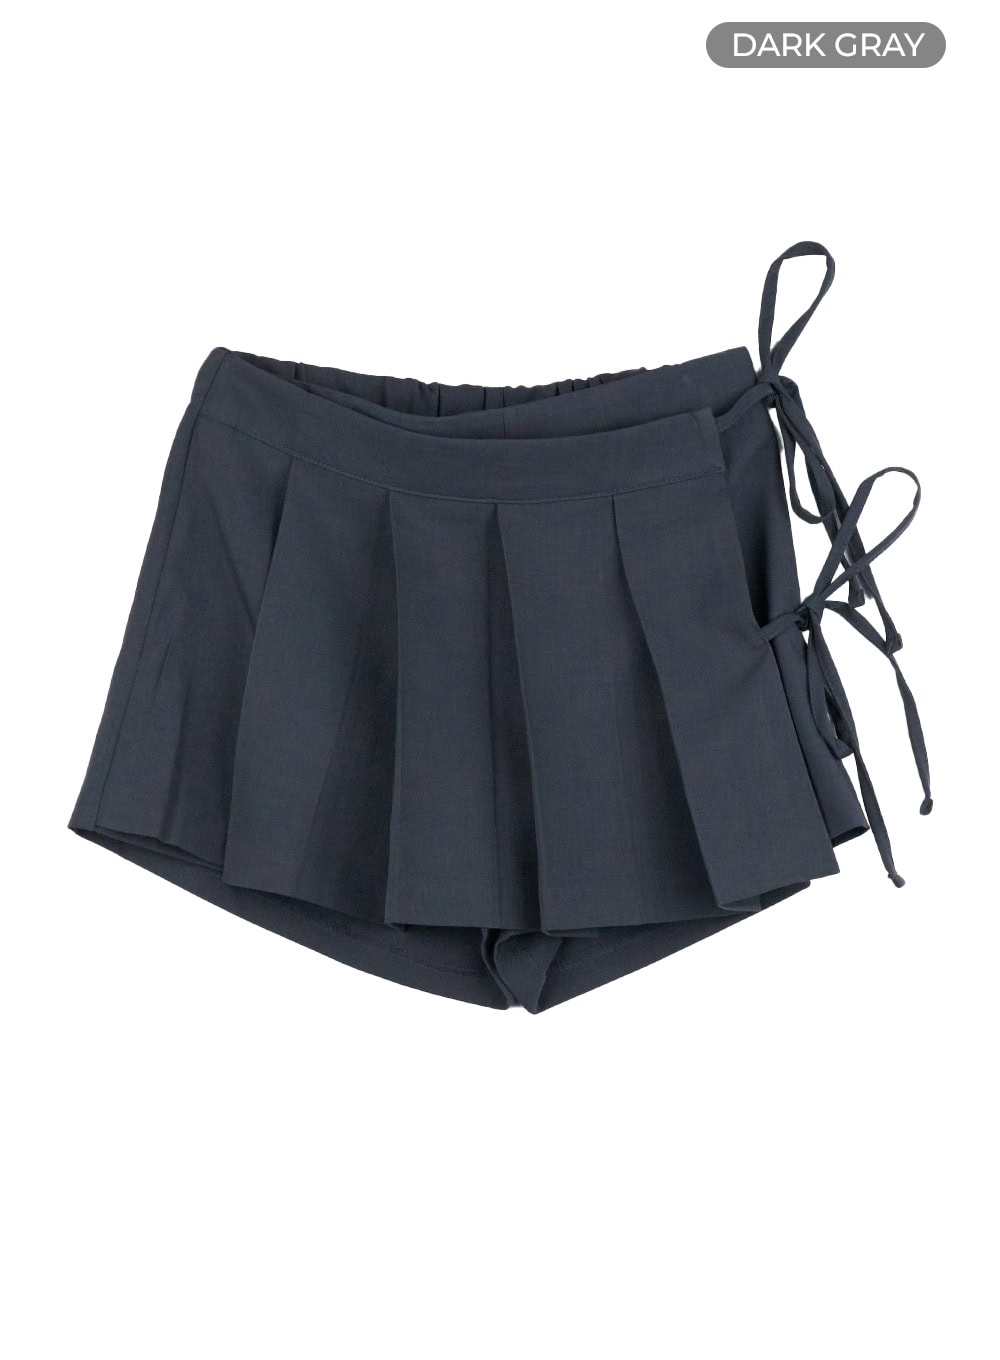 ribbon-strap-pleated-mini-skirt-cl422 / Dark gray